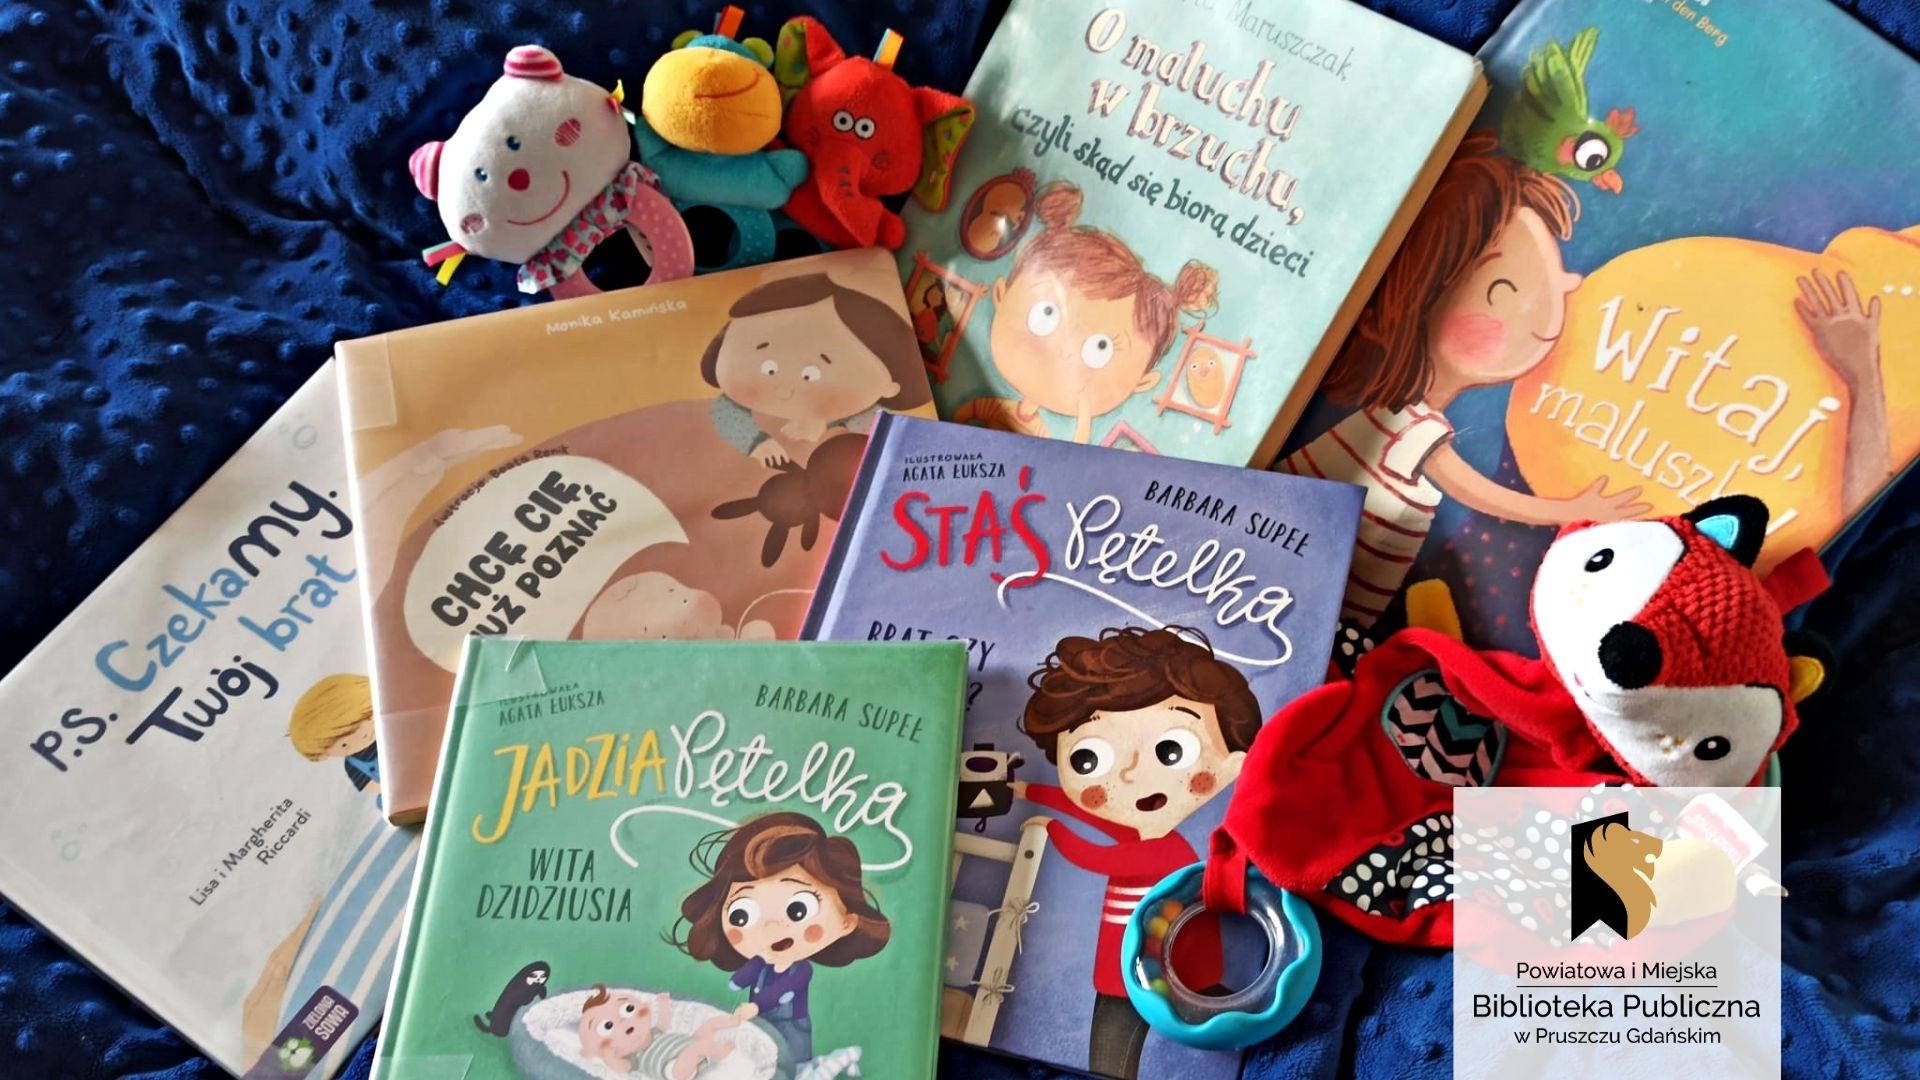 Na niebieskim kocu leży sześć opisanych w tekście książek. Na okładkach znajdują się ilustracje kilkuletnich dzieci, czasami w towarzystwie młodszego rodzeństwa. Pomiędzy książkami ułożonych jest kilka zabawek dla niemowląt.